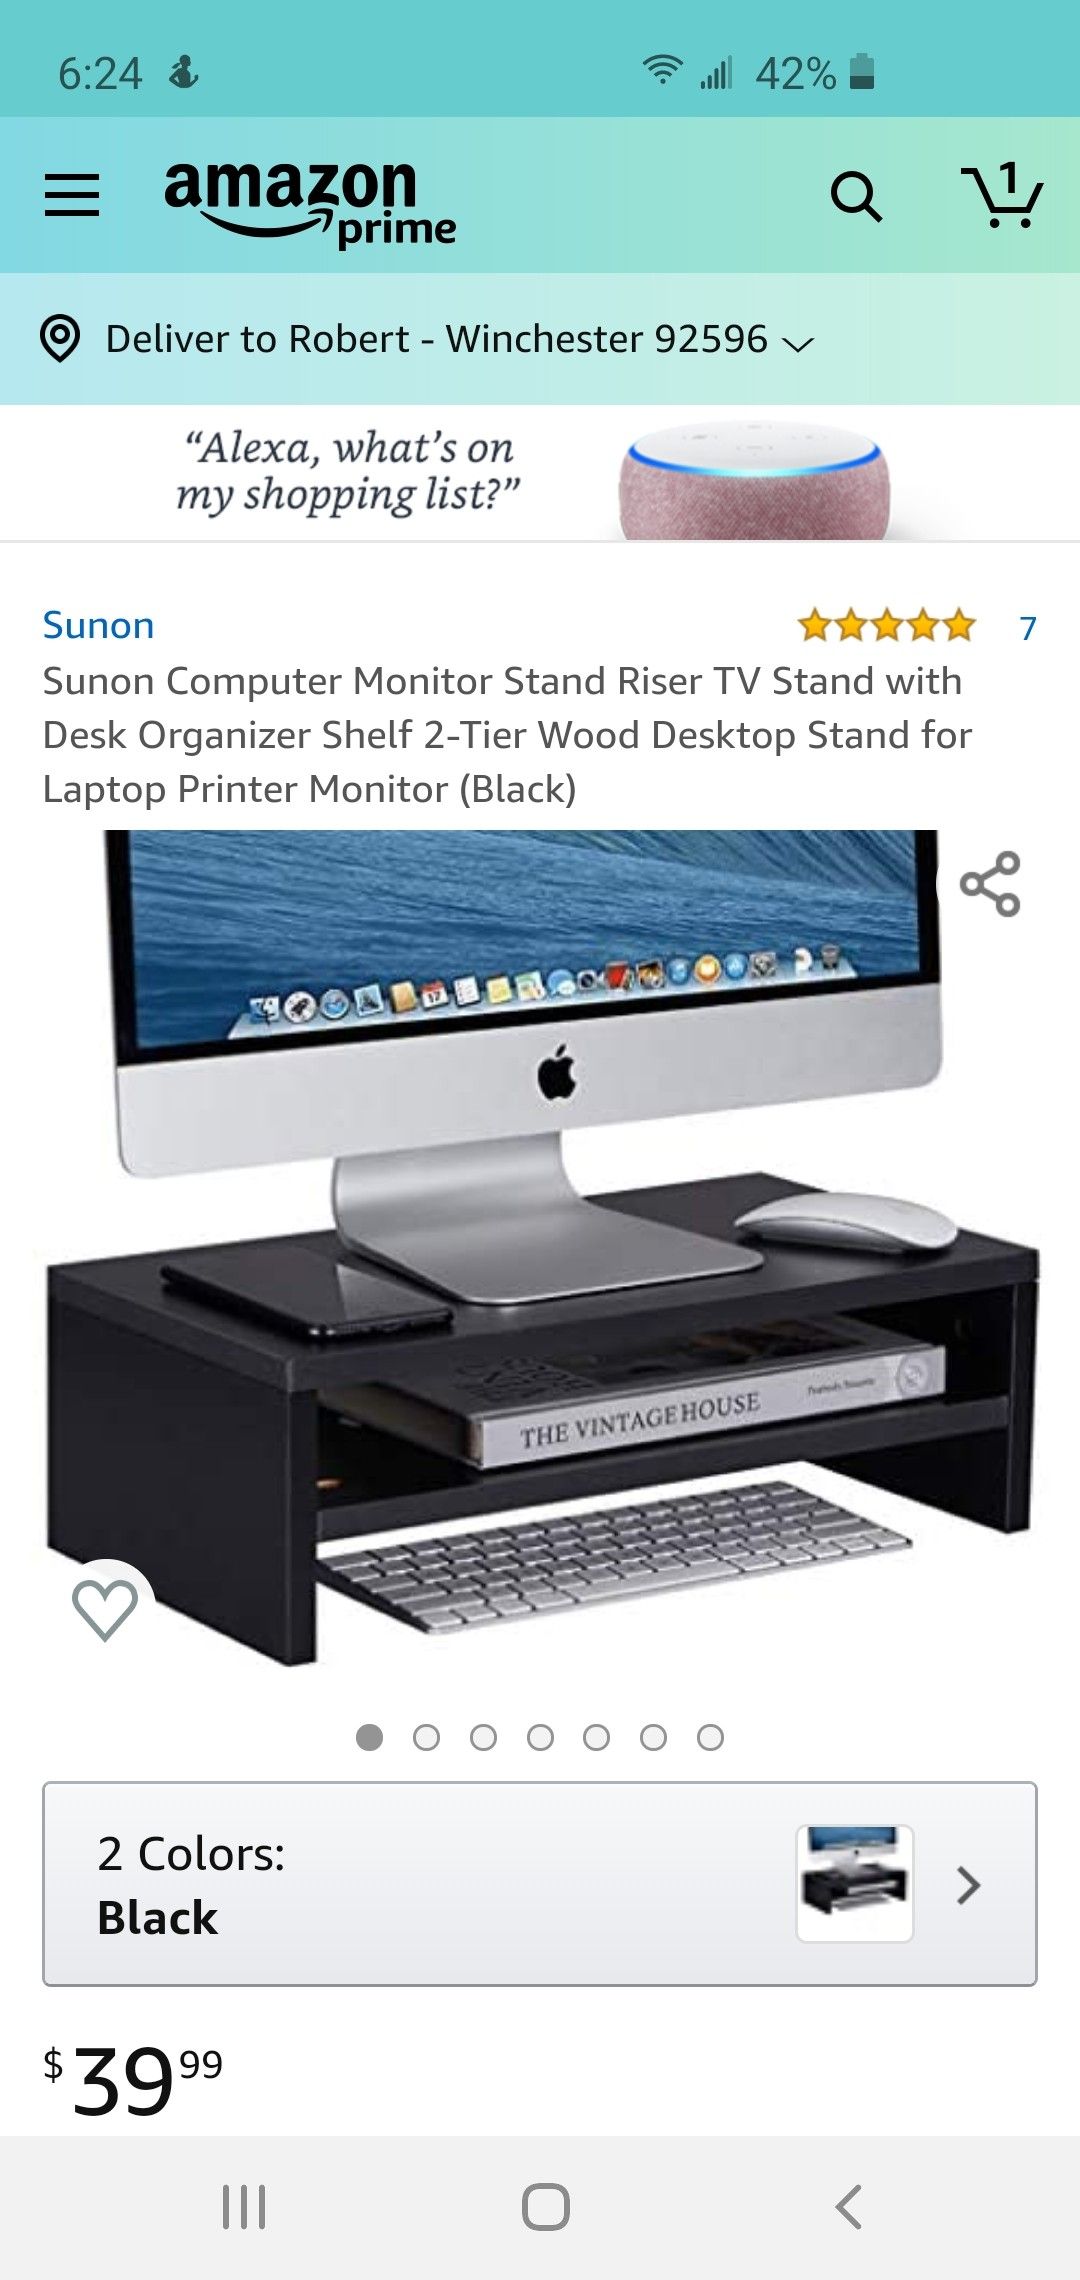 Sunon computer monitor stand